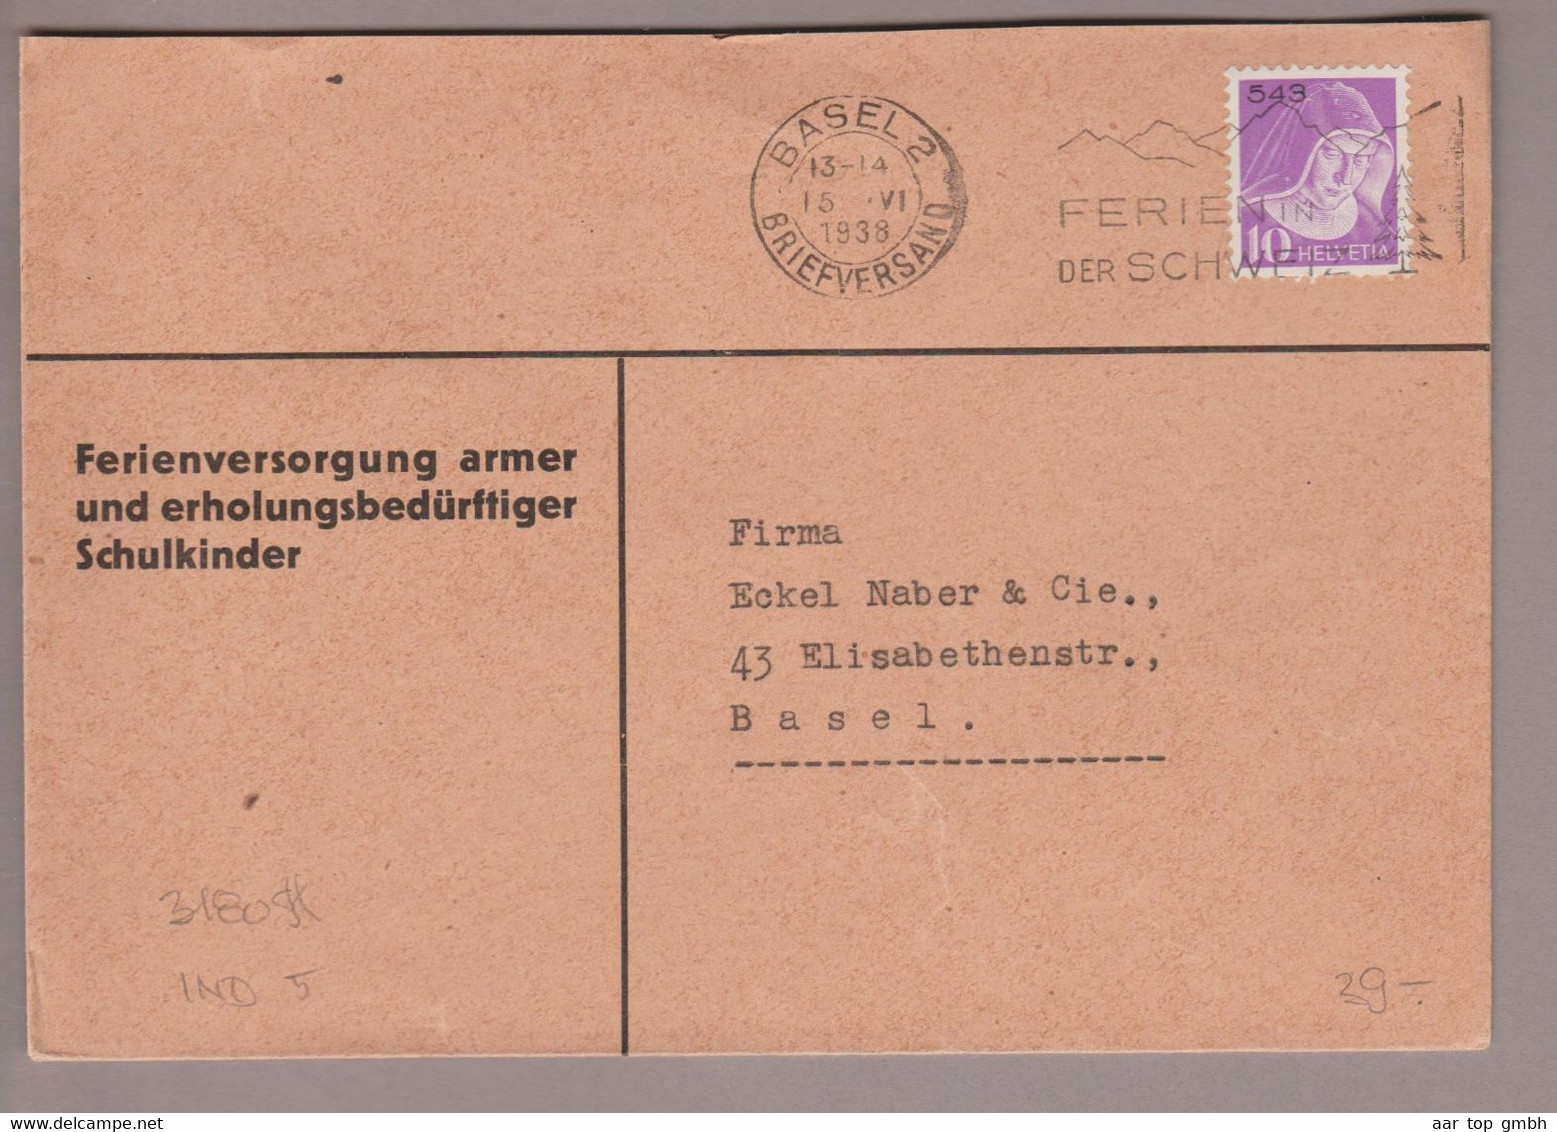 CH Portofreiheit Zu#15z 10Rp. GR#549 Brief 1938-06-15 Basel Ferienversorgung Armer U.erholungsbedürftiger Schulkinder - Franchise